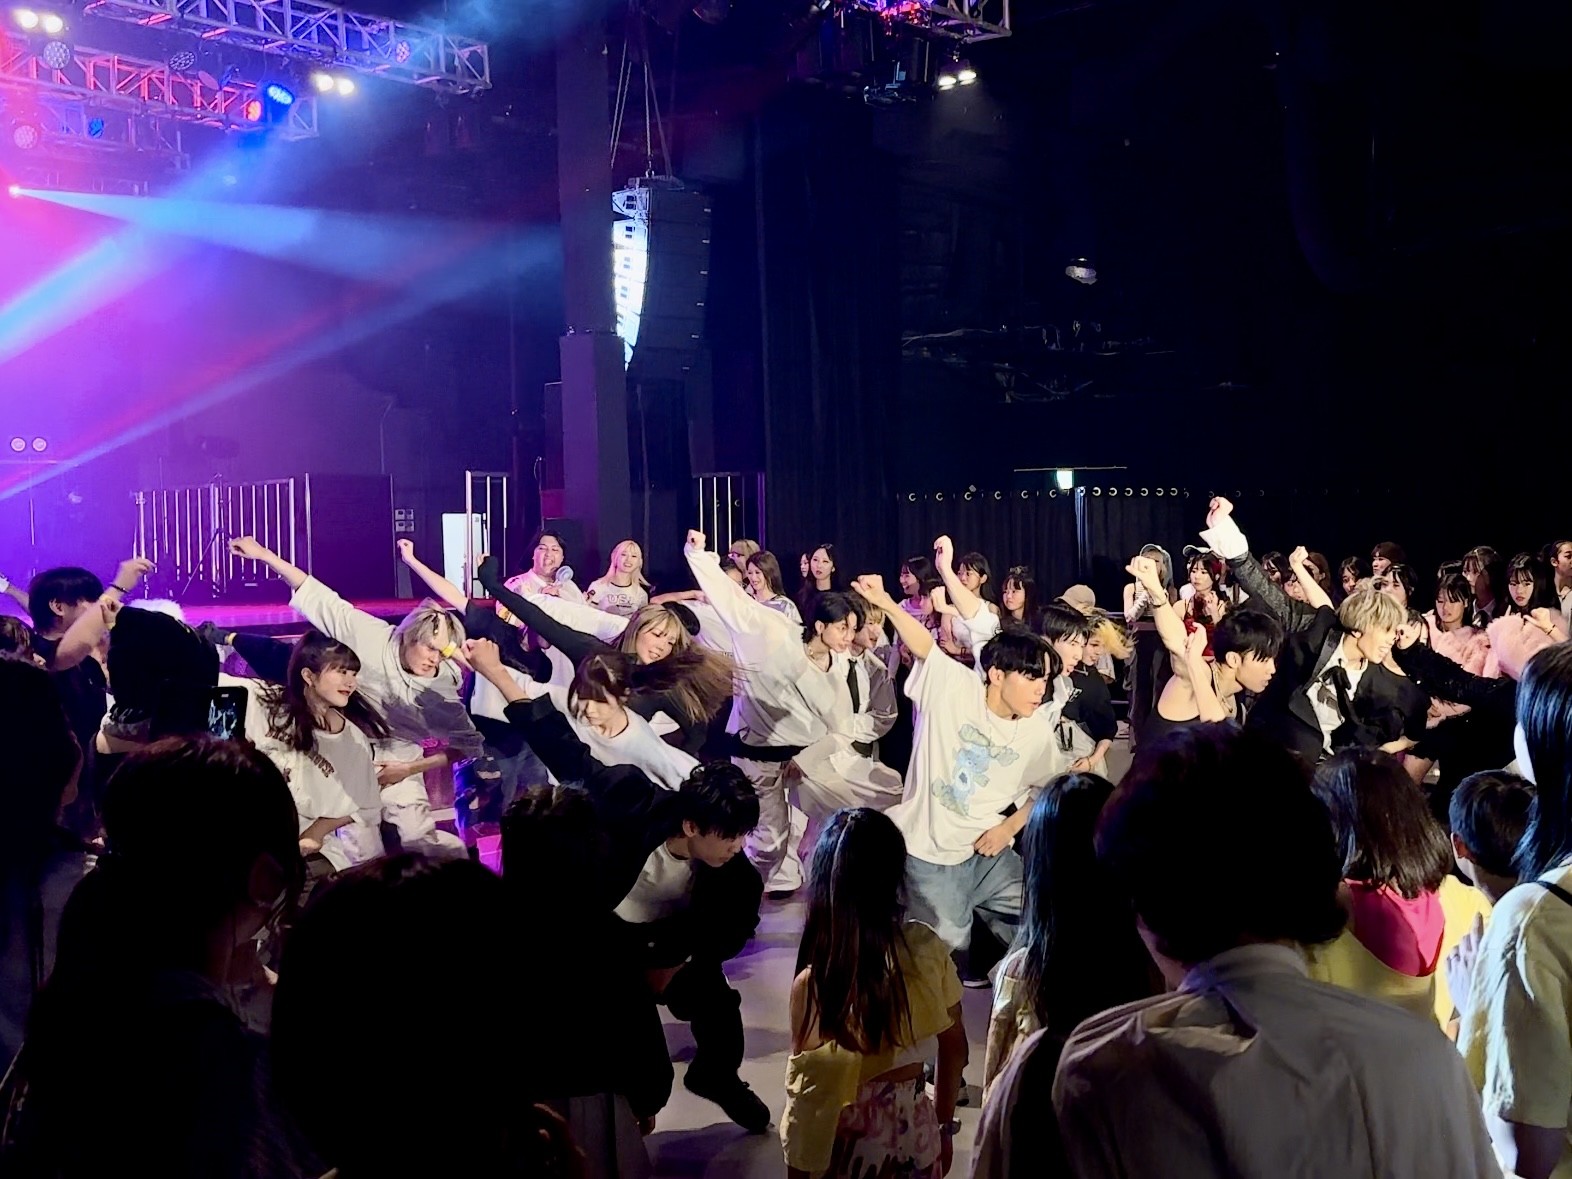 日本最大のK-POPイベントを開催しているNESTALがプロデュースするランダムダンスイベント「K-POP RANDOM DANCE」